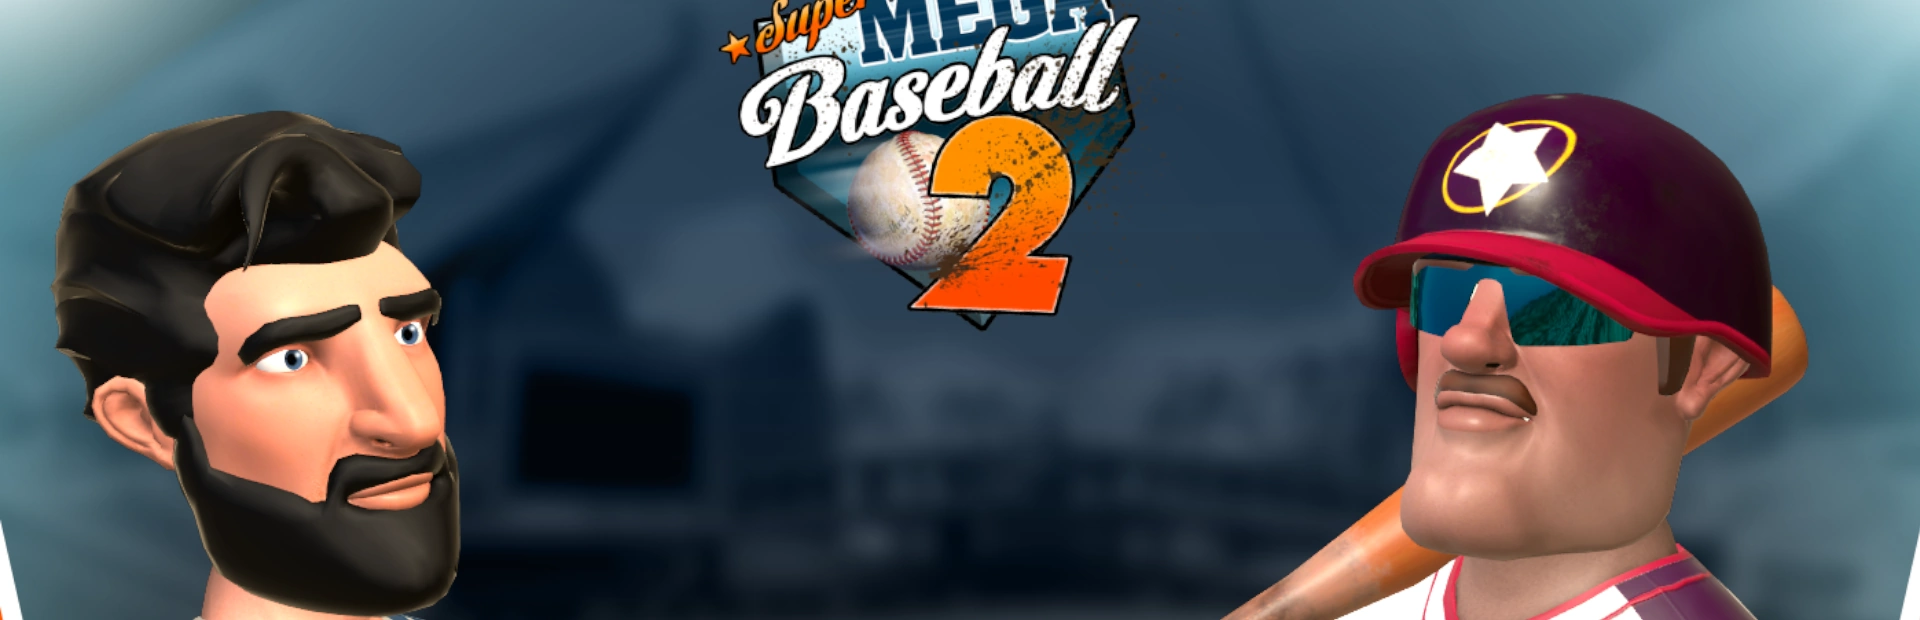 دانلود بازی Super Mega Baseball 2 برای کامپیوتر | گیمباتو